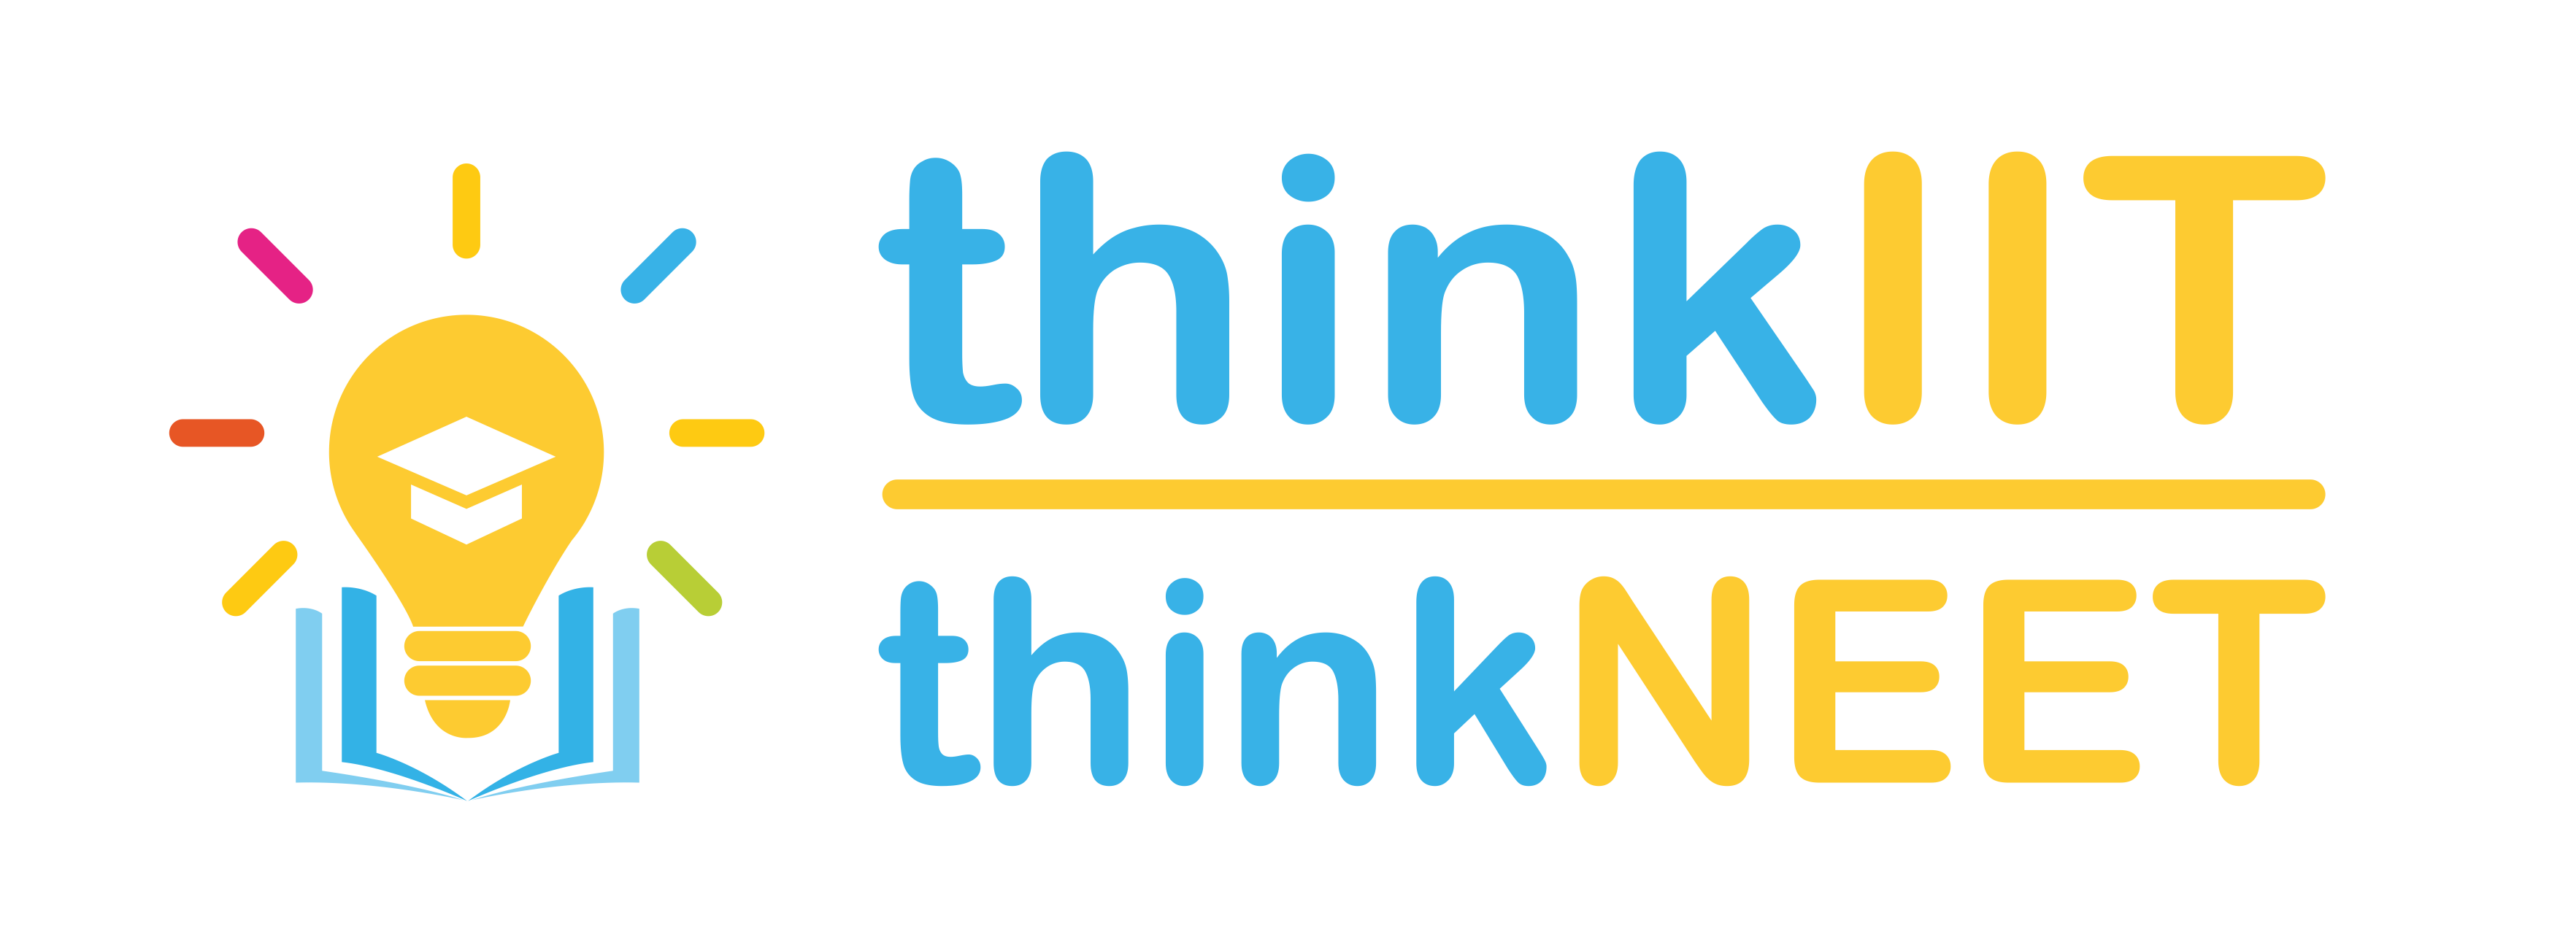 thinkIIT - thinkNEET Logo